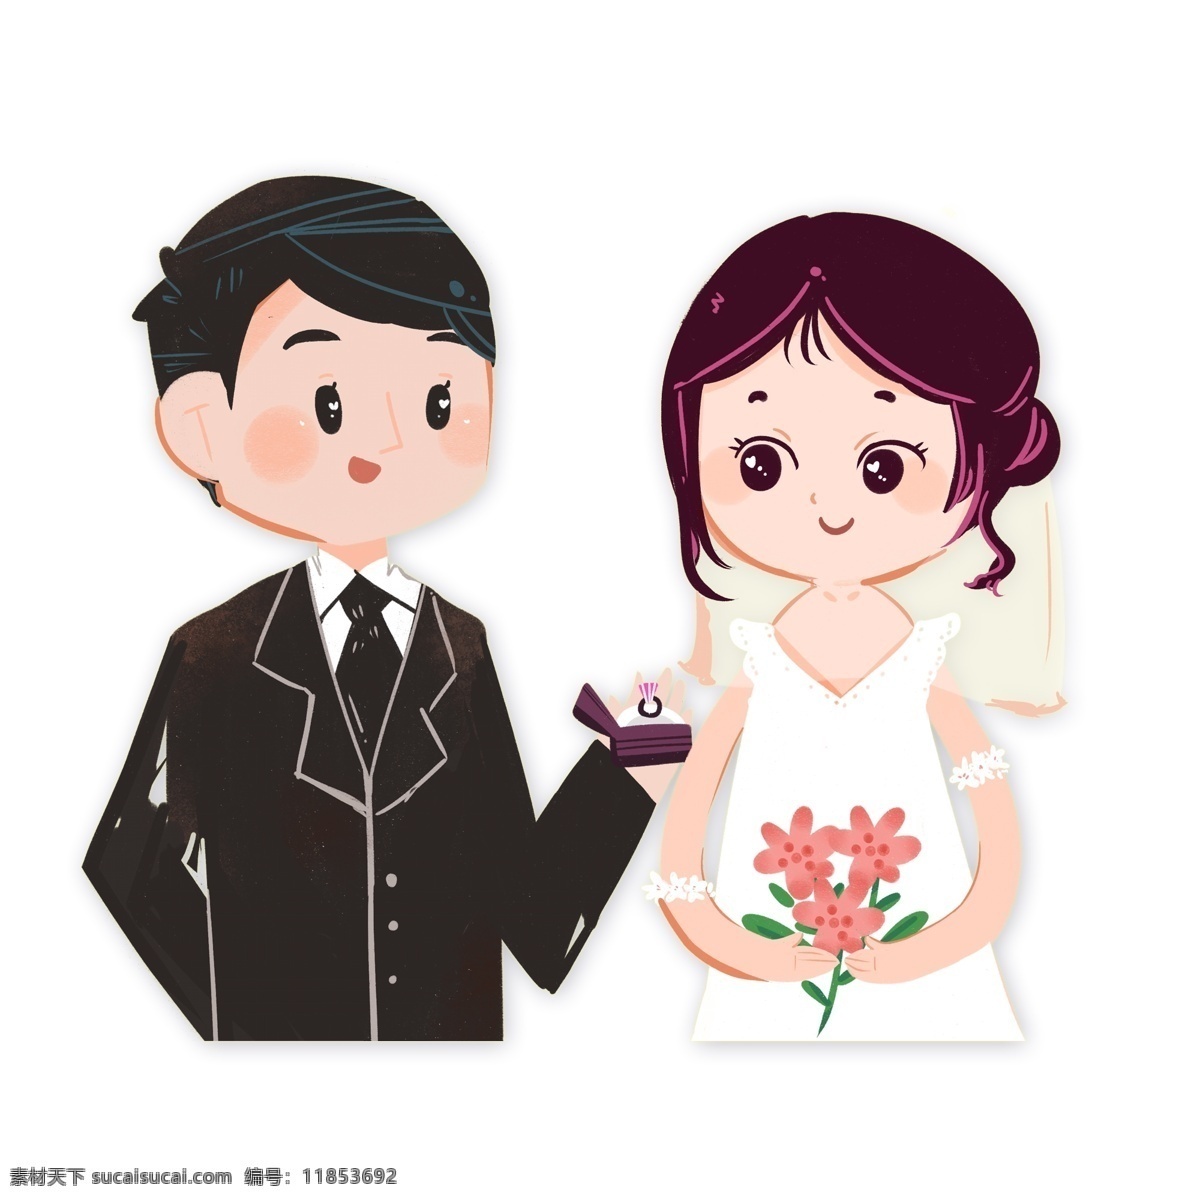 结婚 新娘 新郎 人物 装饰 卡通 时尚 女孩 插画 背影 精致 手绘